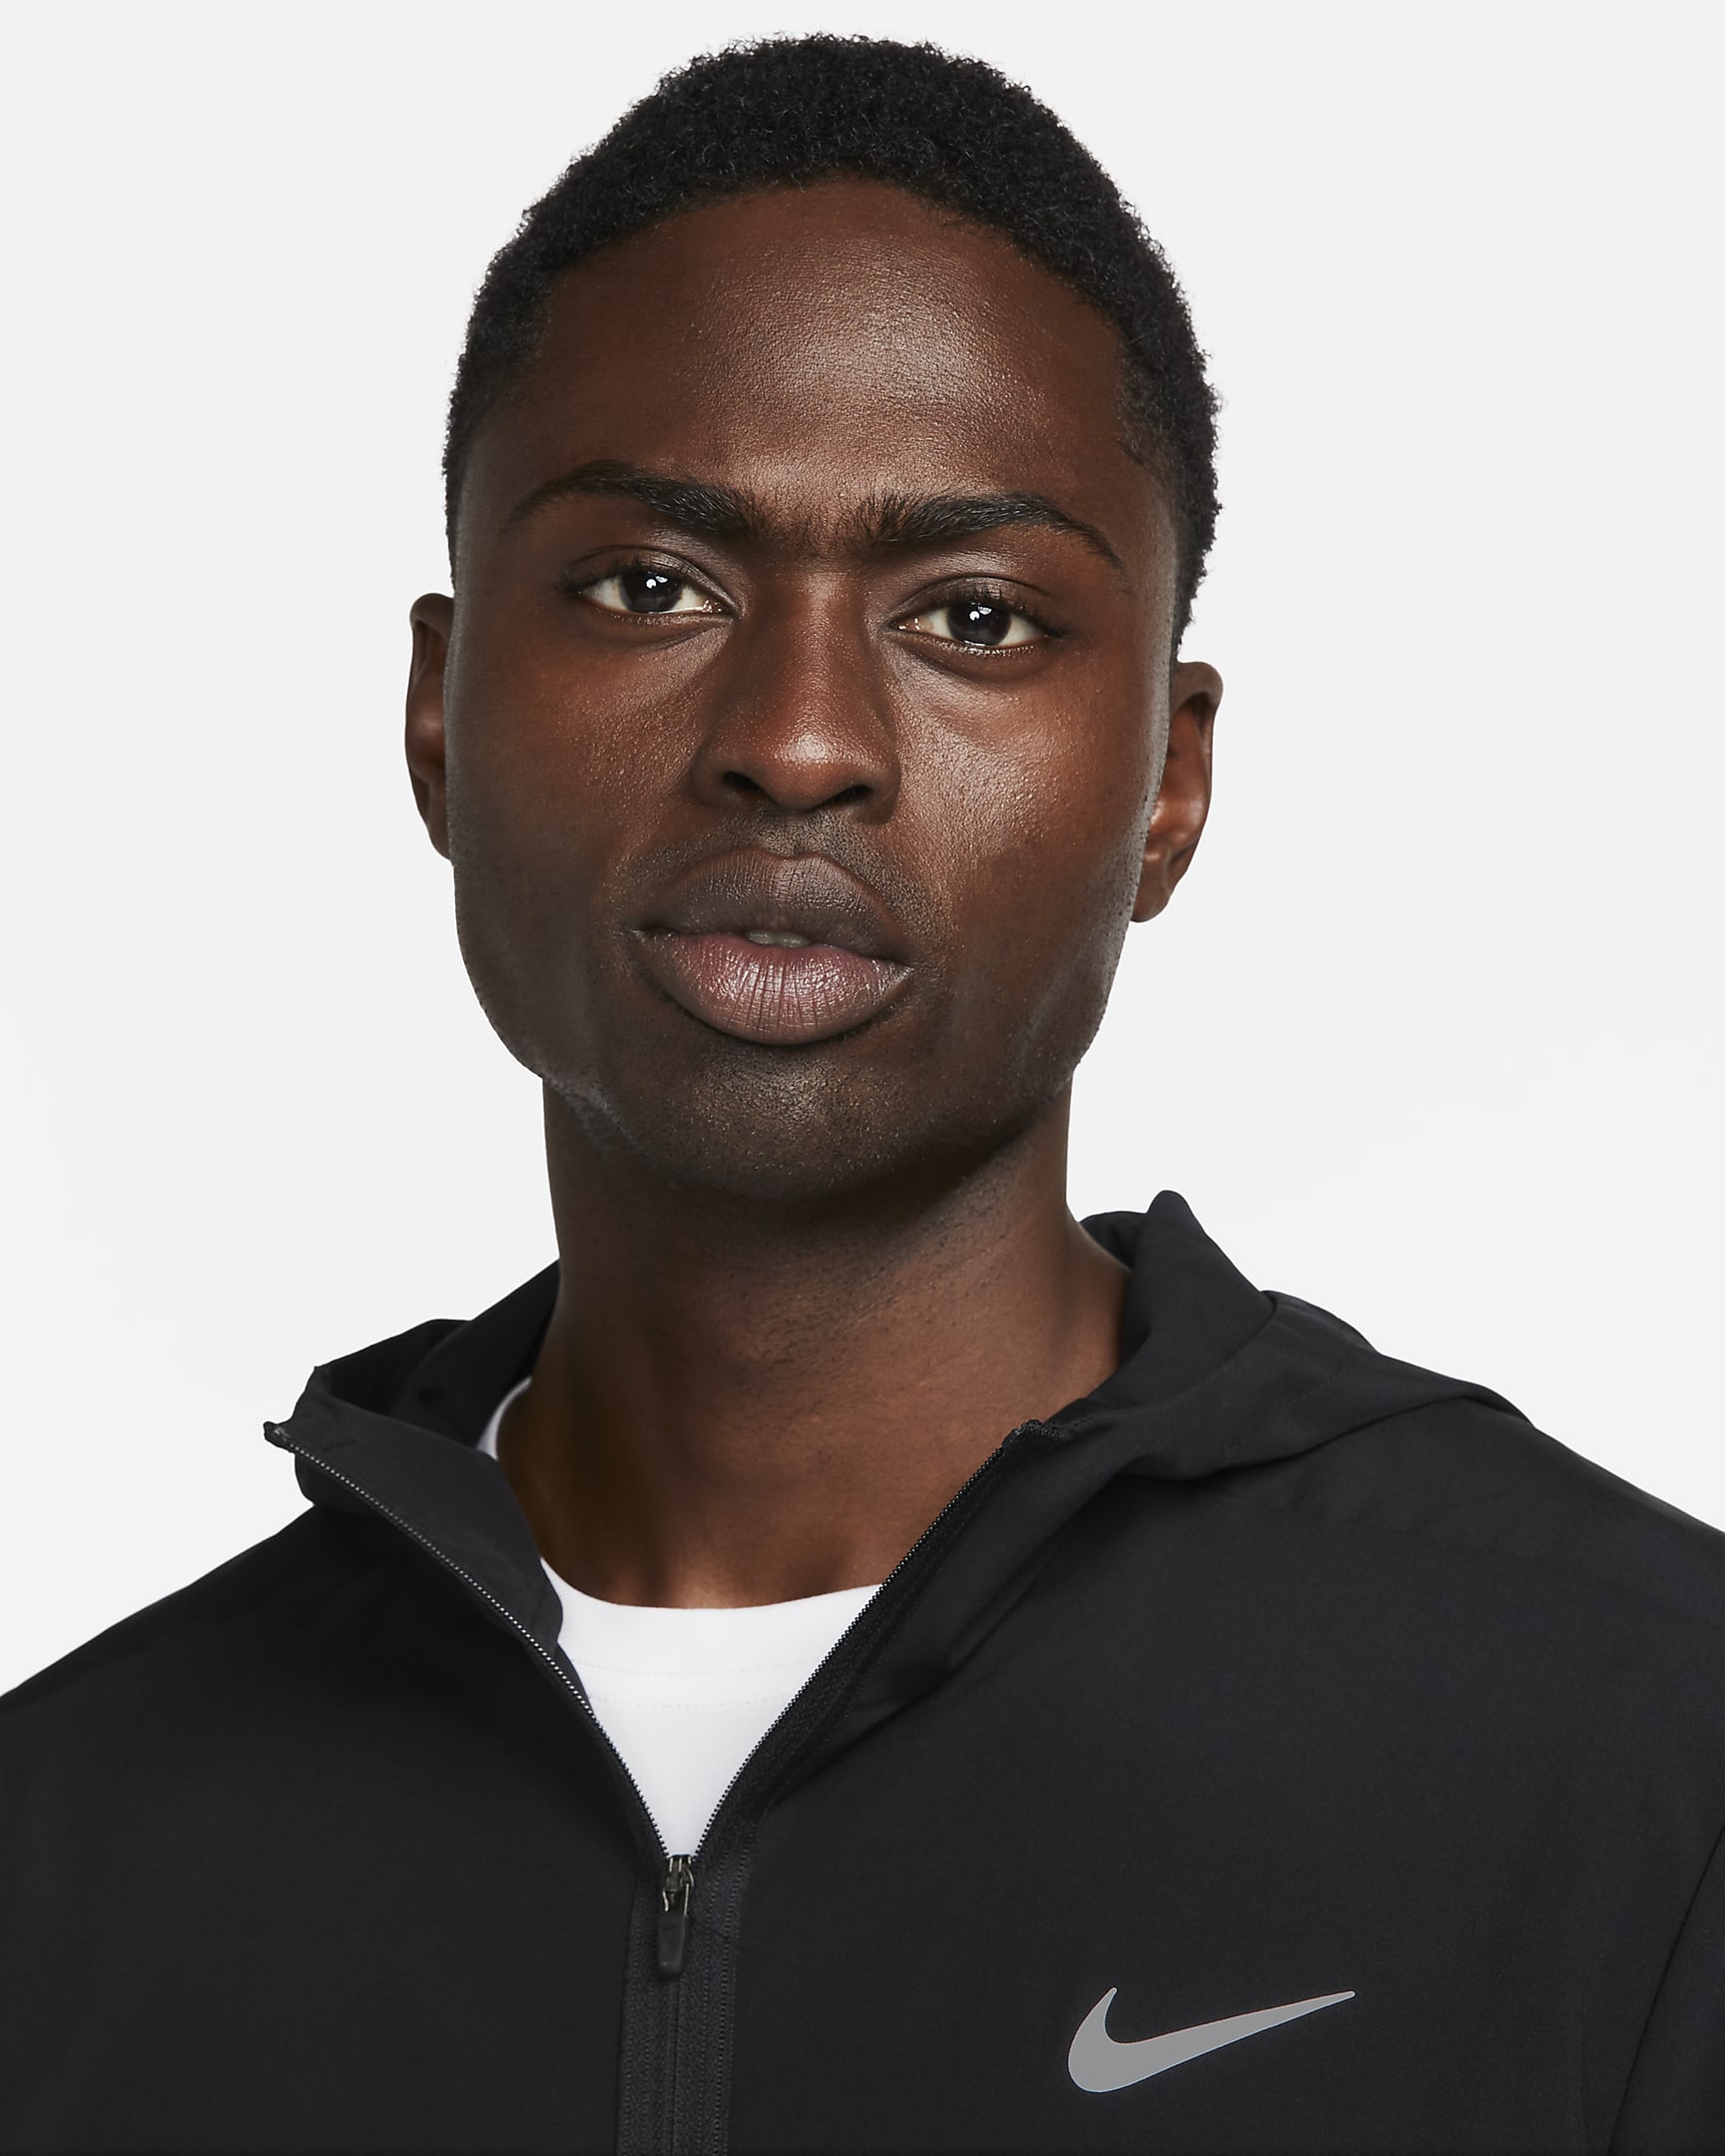 Veste à capuche Dri-FIT Nike Form pour homme - Noir